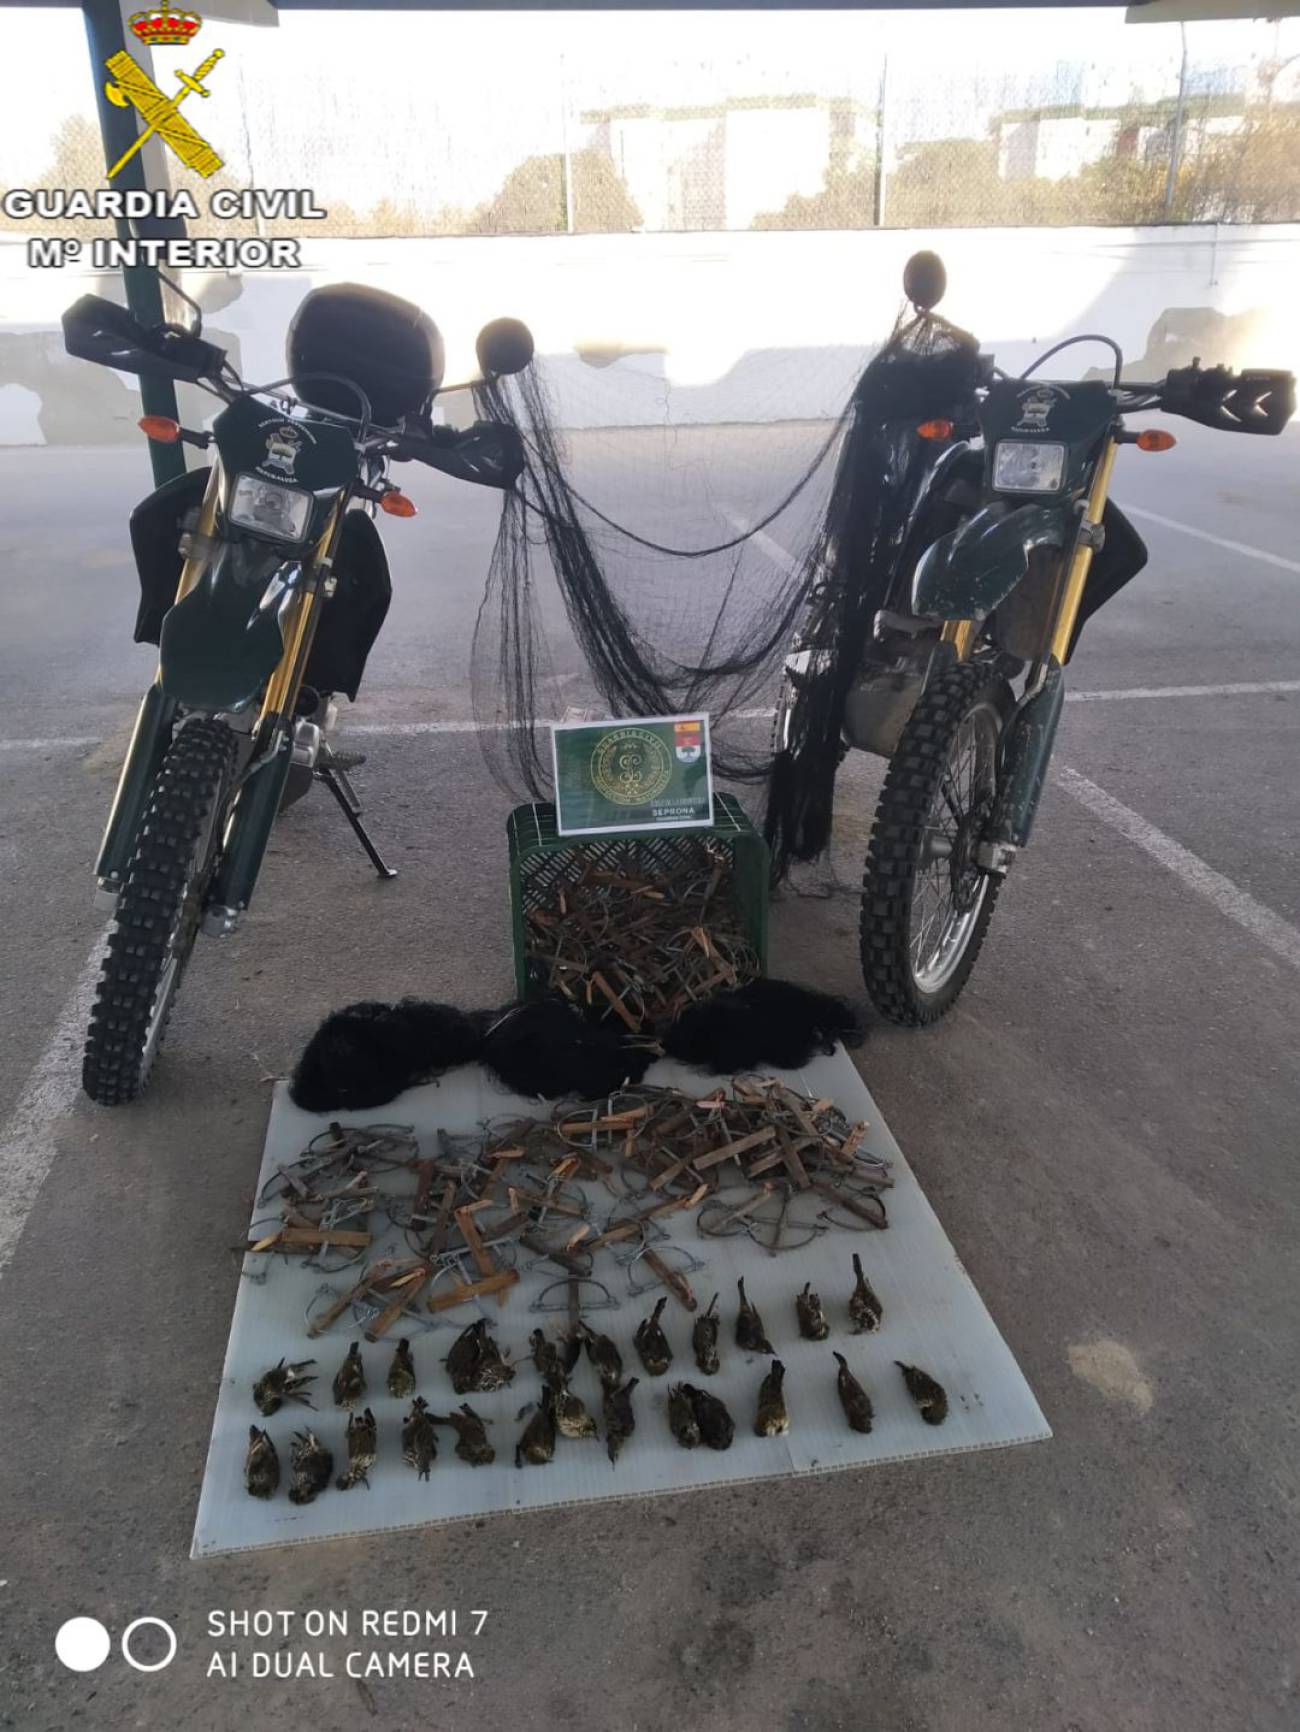 Intervenidas 25 aves insectívoras en Jerez tras ser capturadas con artes de caza ilegales